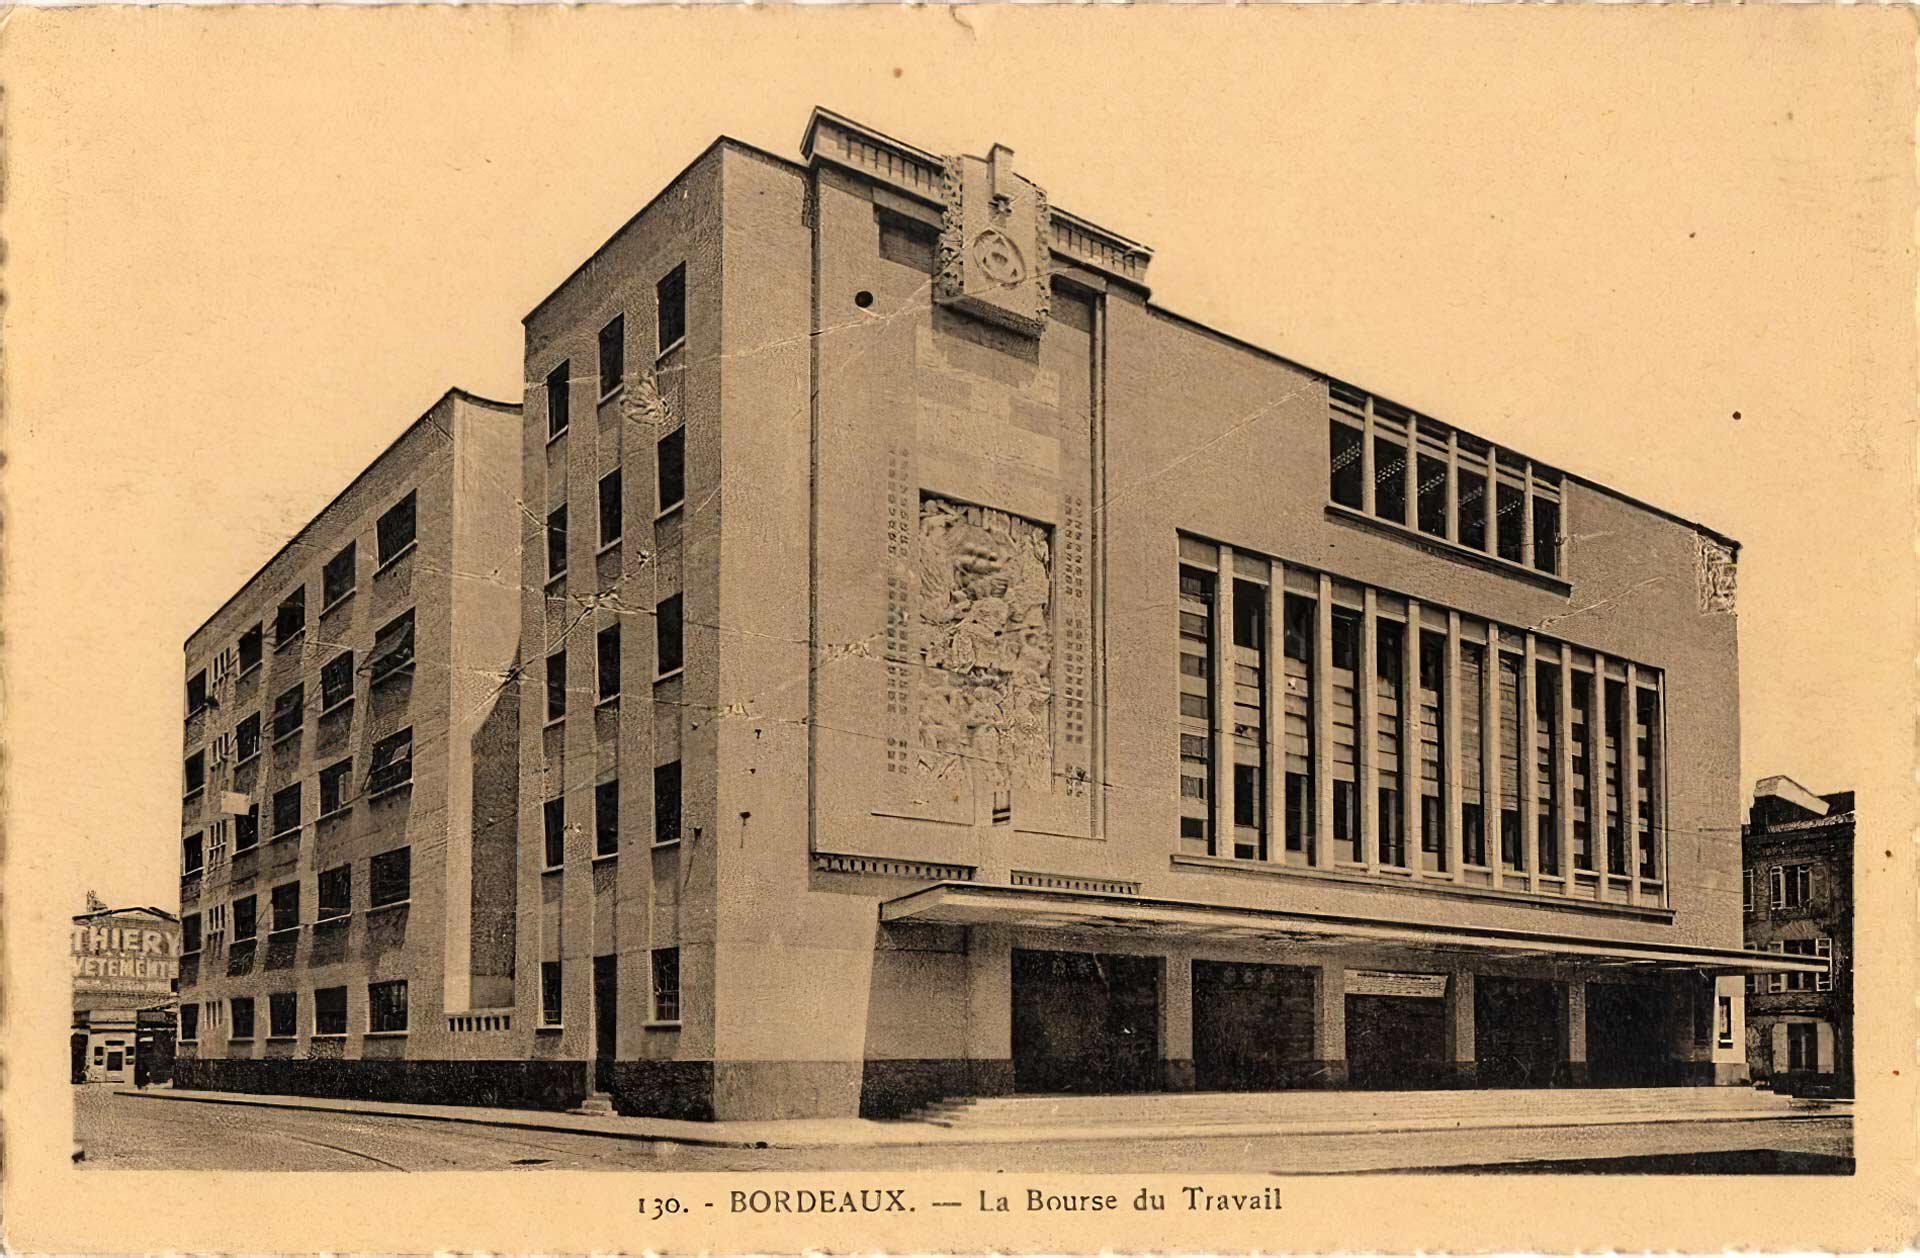 Carte postale de la Bourse du Travail de Bordeaux, en 1940, offerte par Adrien Marquet à la CGT.